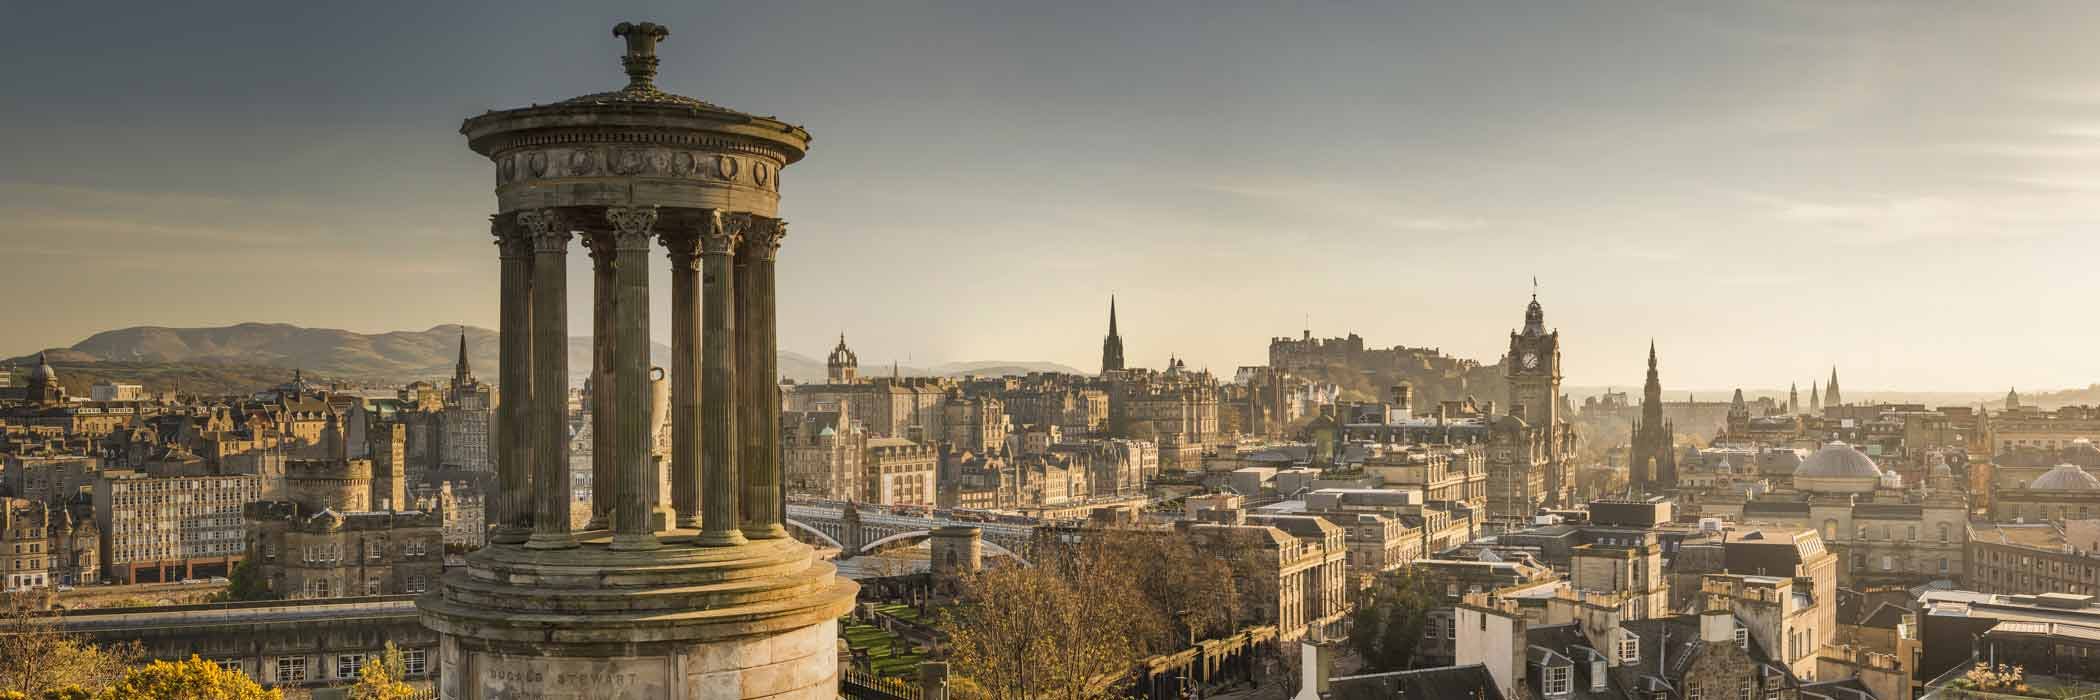 Edinburgh Skyline - Cheap UK Hotels